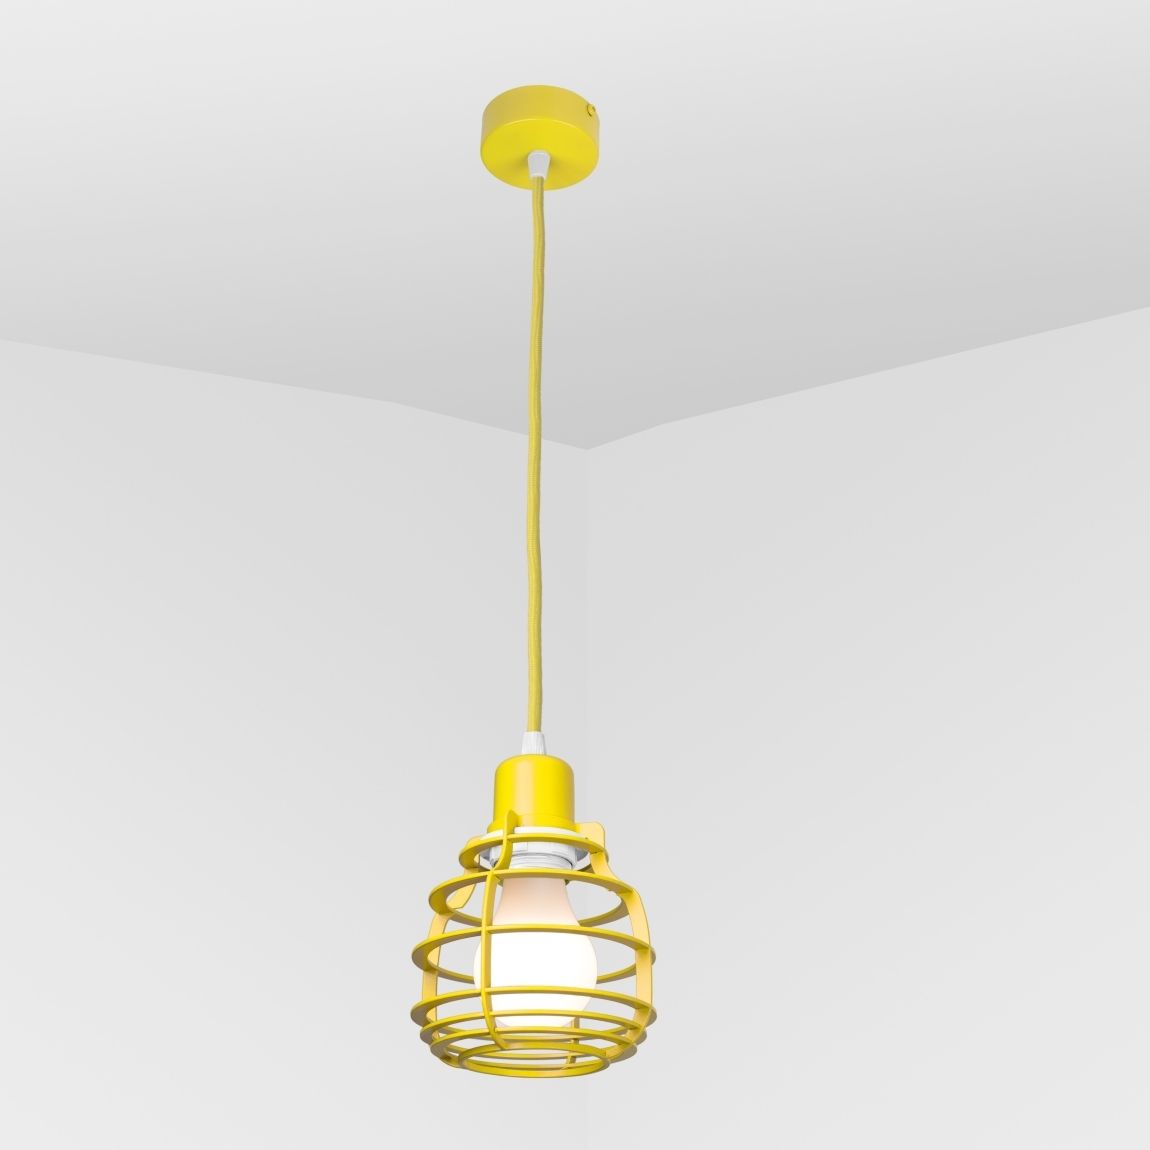 Suspension lamp Ara yellow